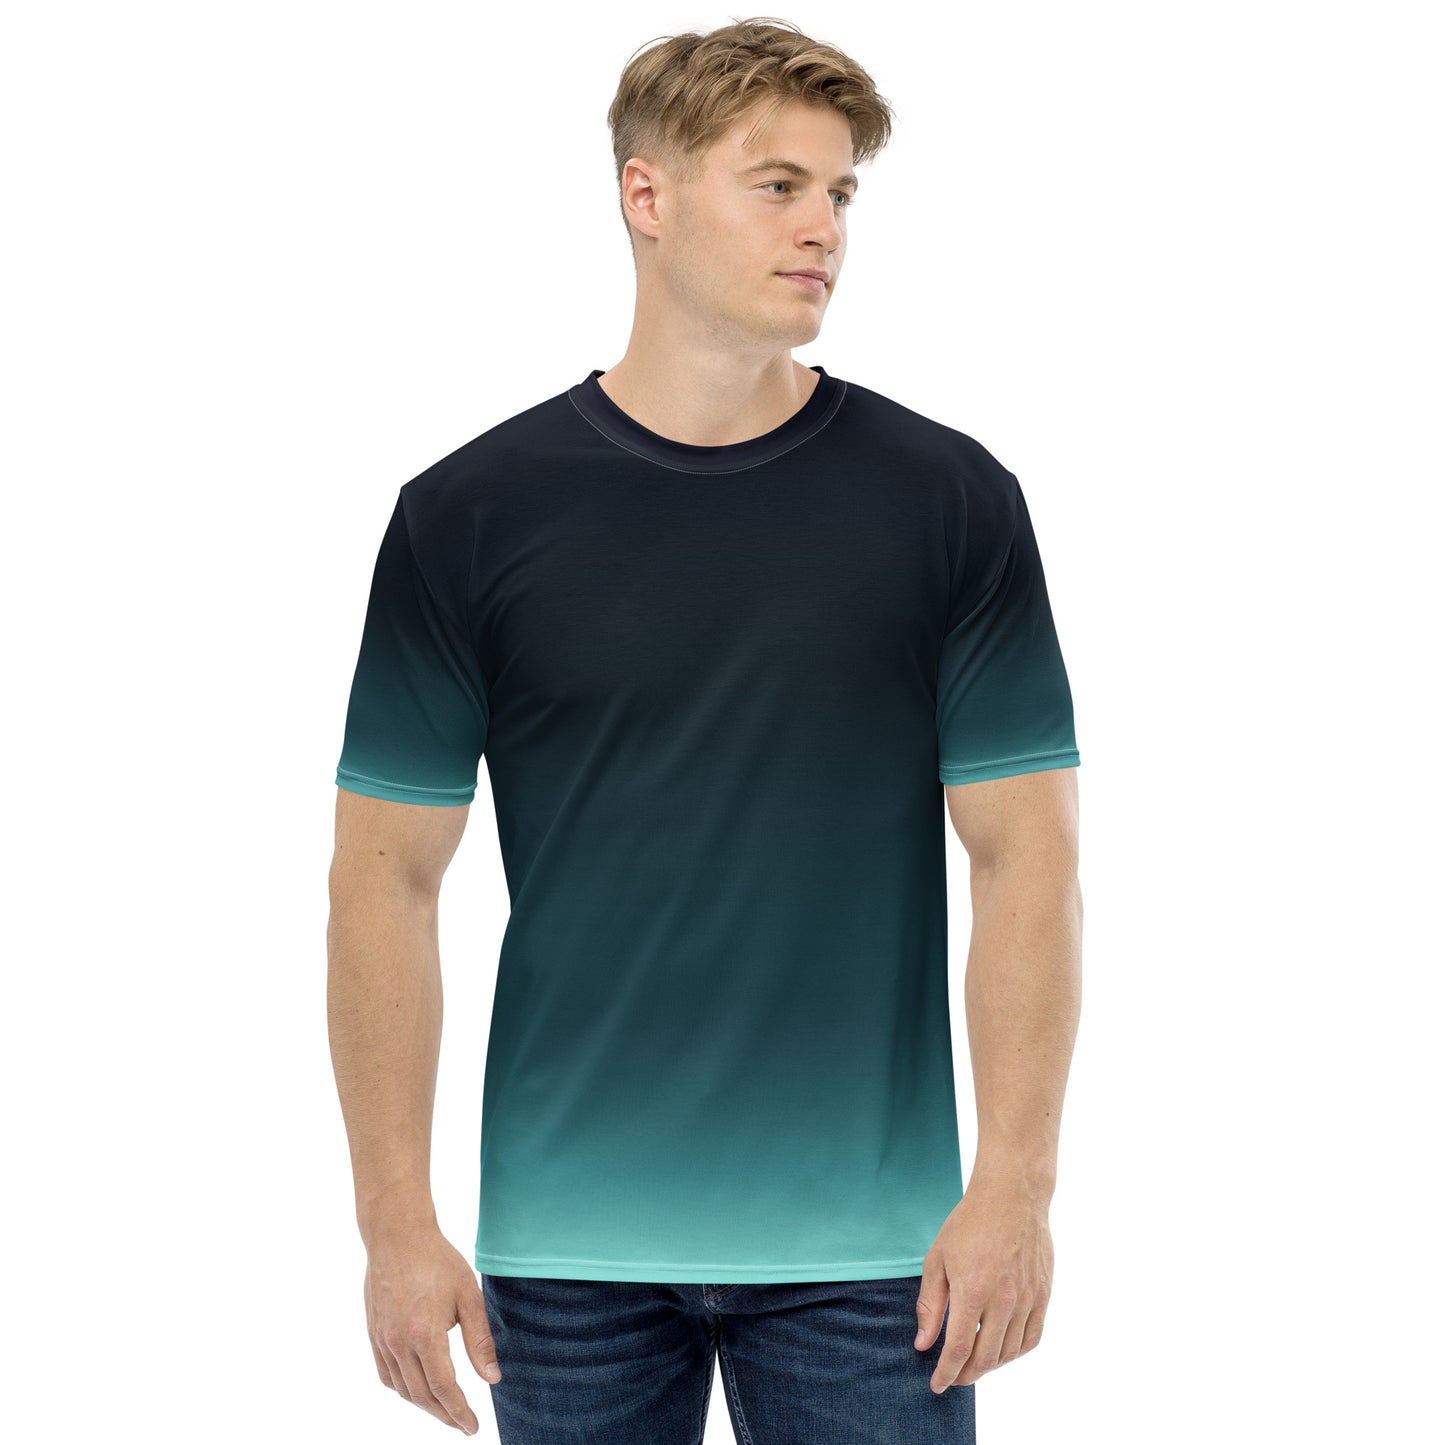 dotBlend Men's T-Shirt - Teal Gradient